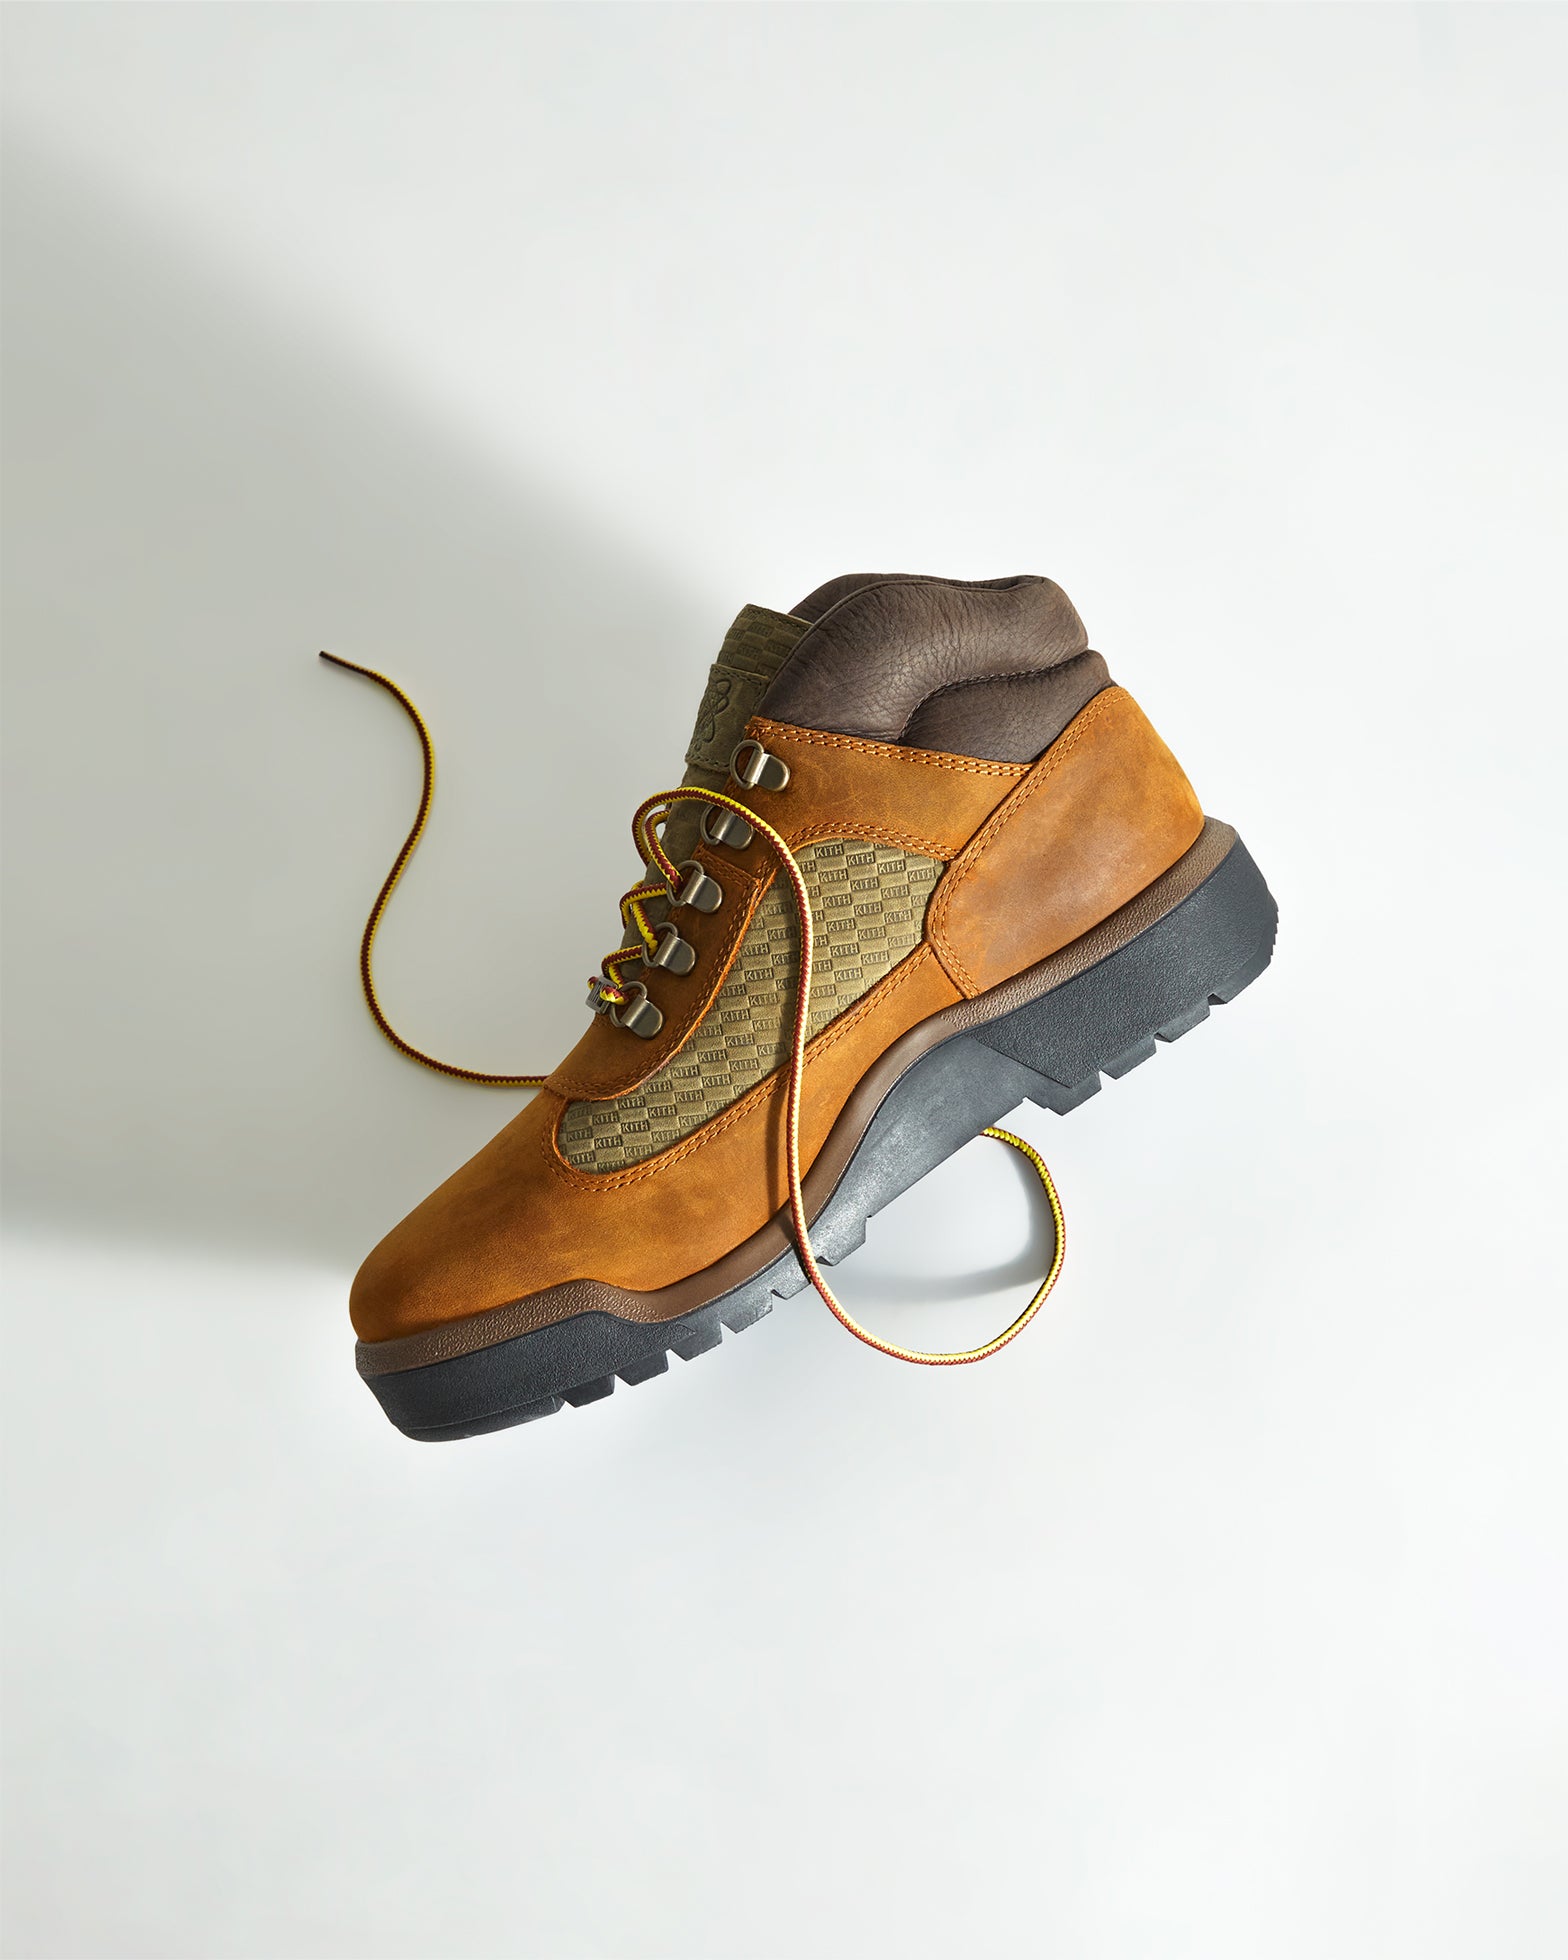 Timberland® Larchmont II Leather Waterproof Chukka Boots